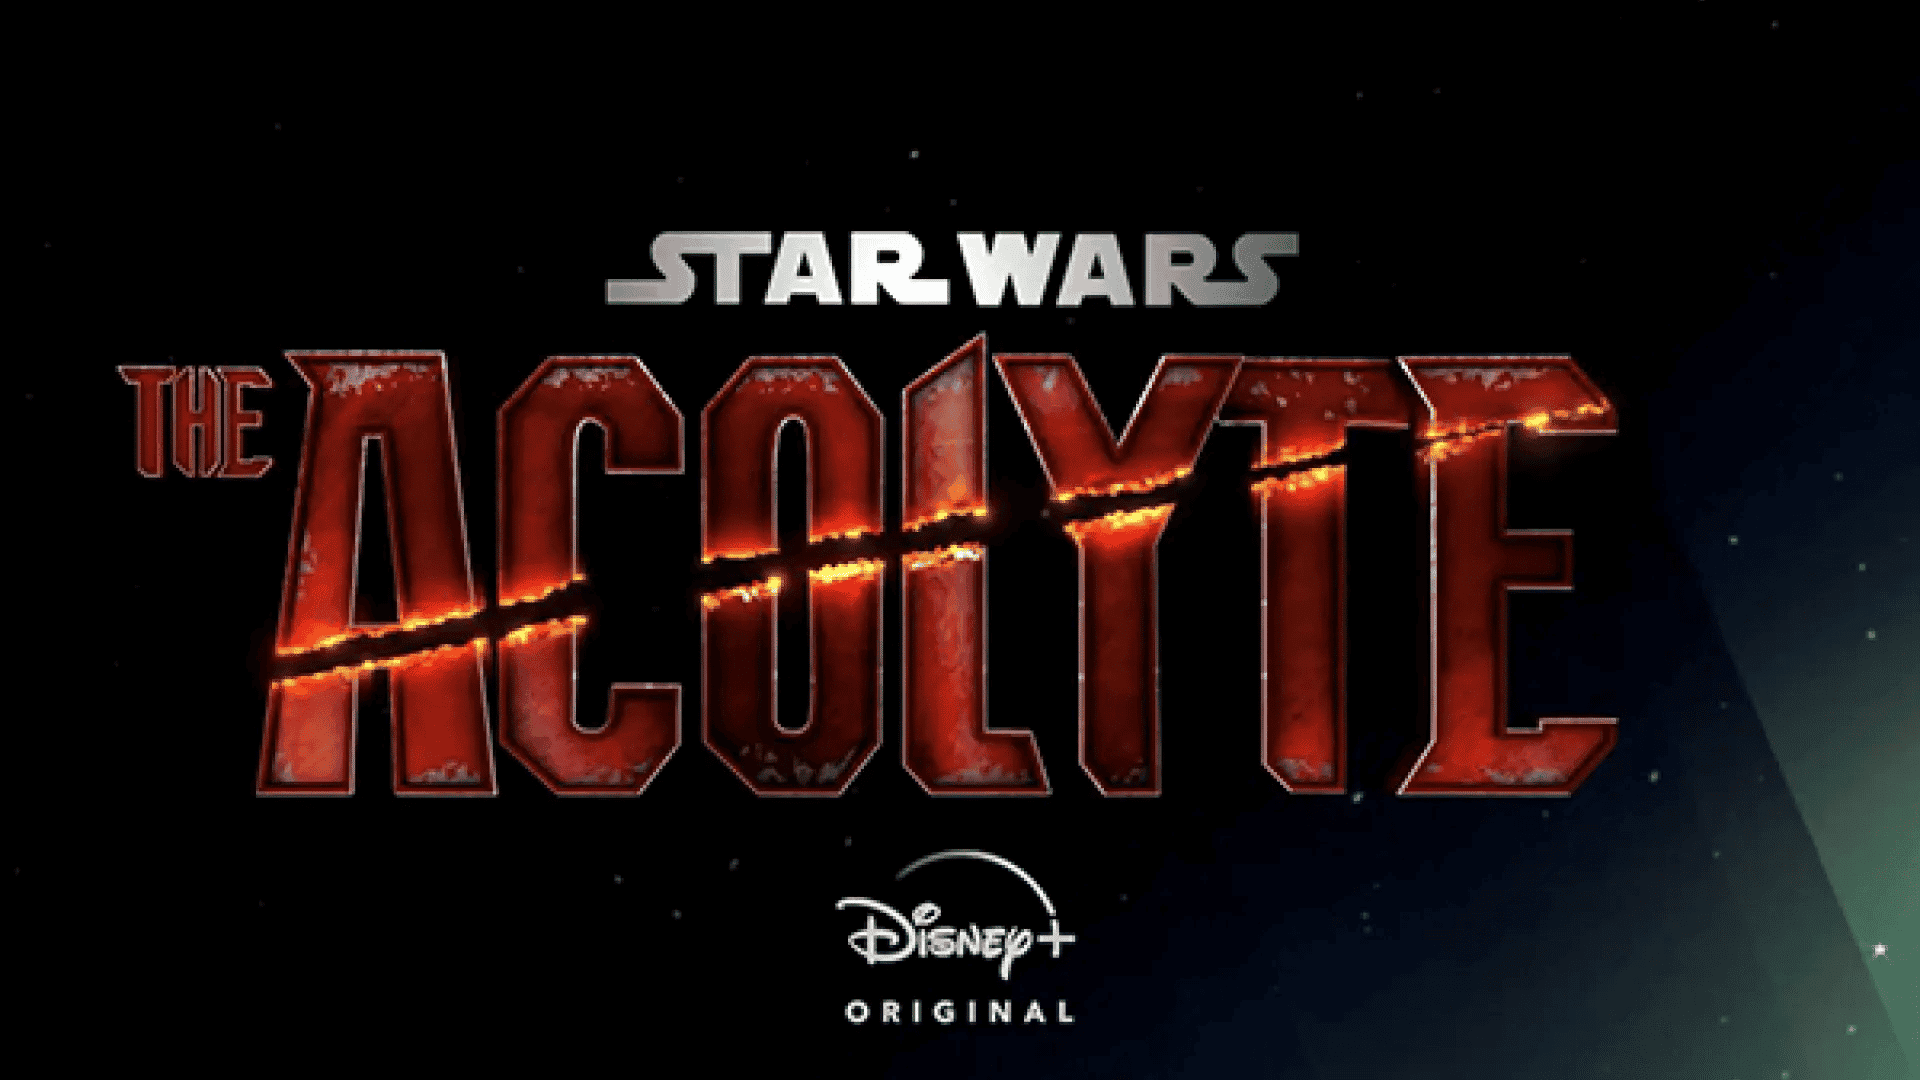 Star Wars: The Acolyte: todos los detalles